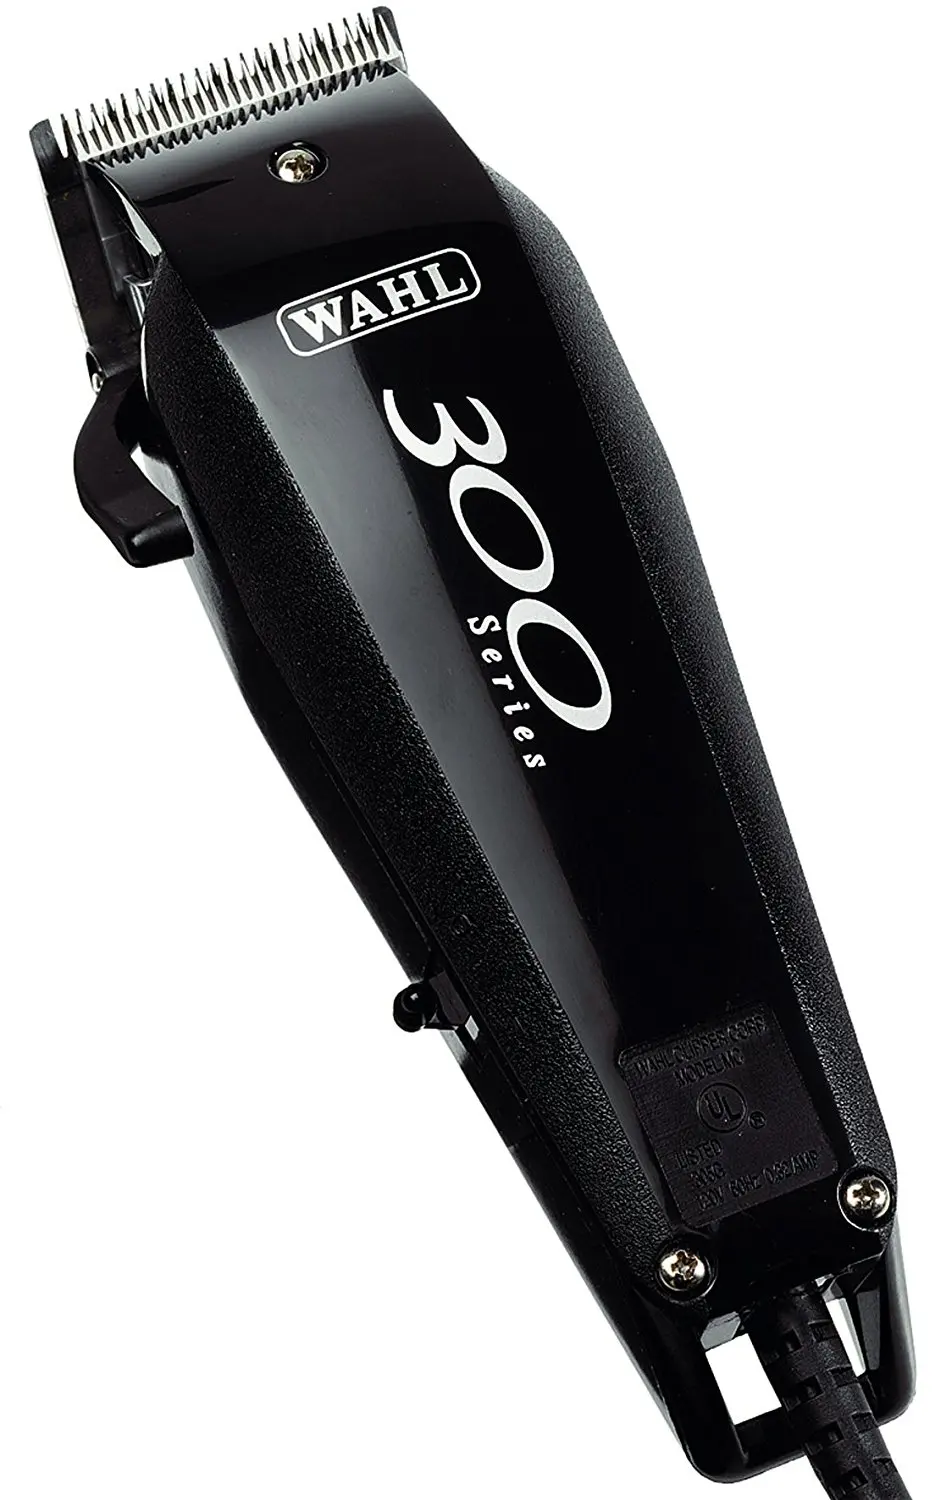 wahl clipper model 9217